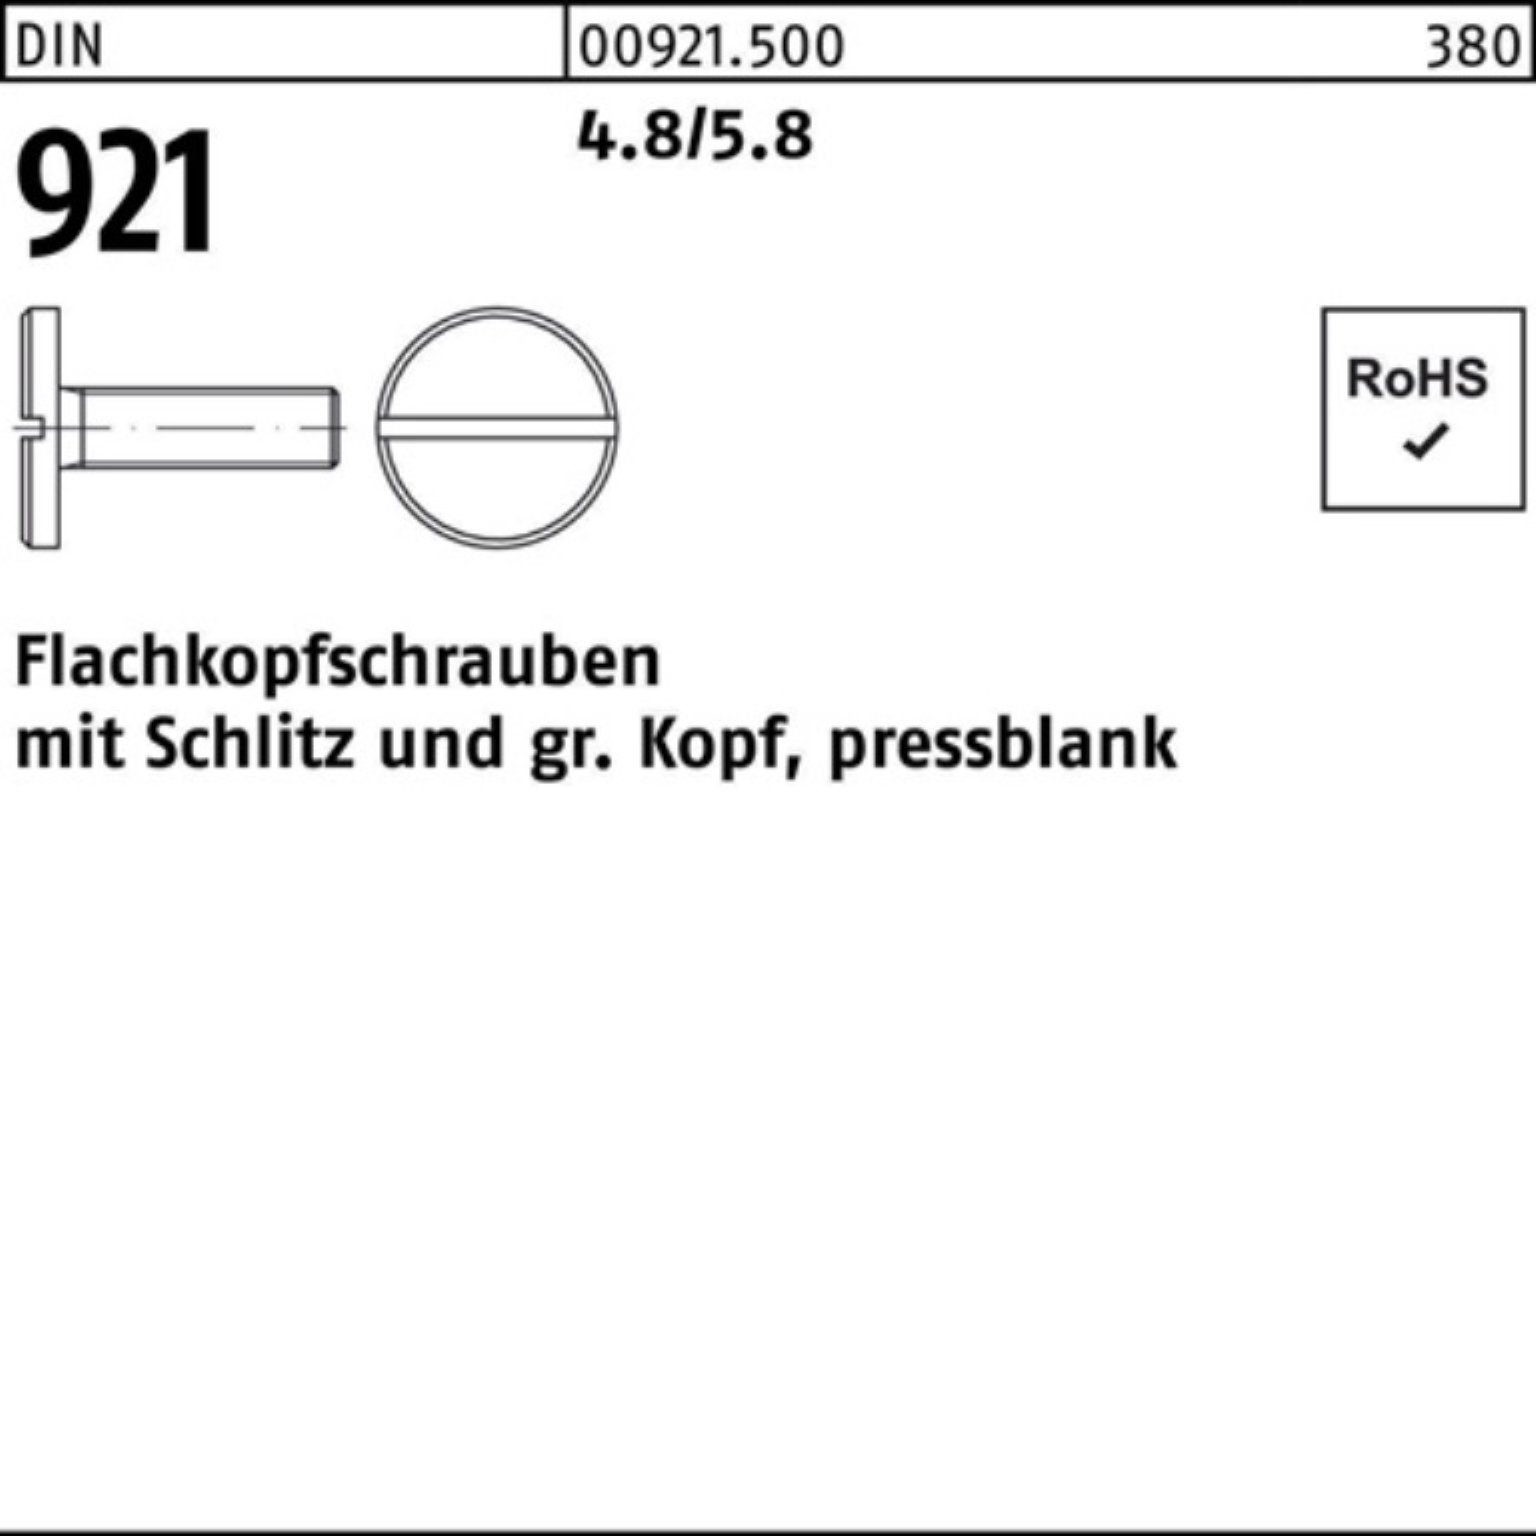 100er M4x Flachkopfschraube Pack 16 Stück 921 4.8/5.8 100 DIN Schraube Reyher Schlitz